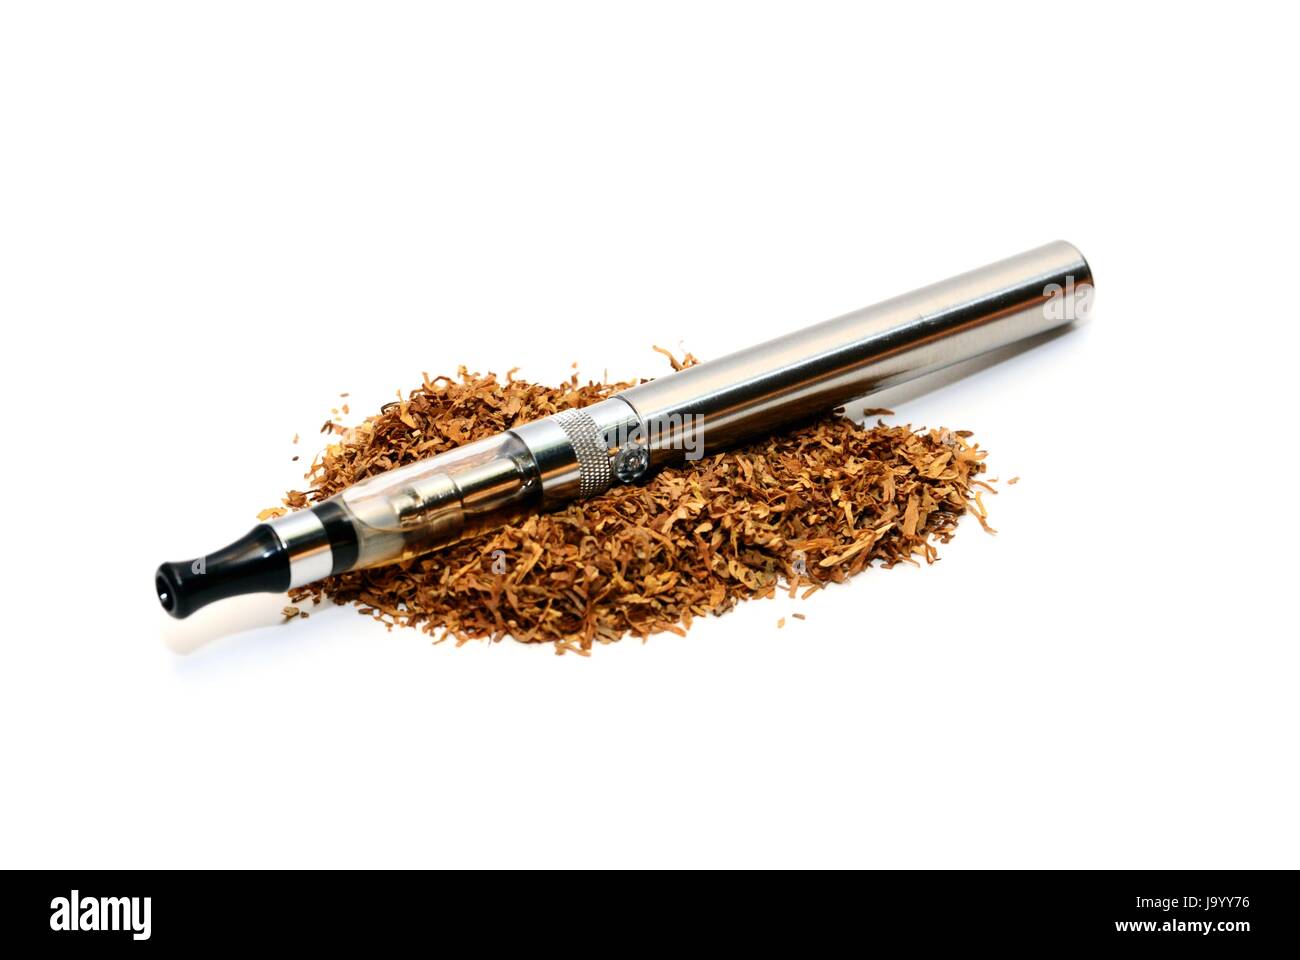 e-cigarette with tobacco Stock Photo